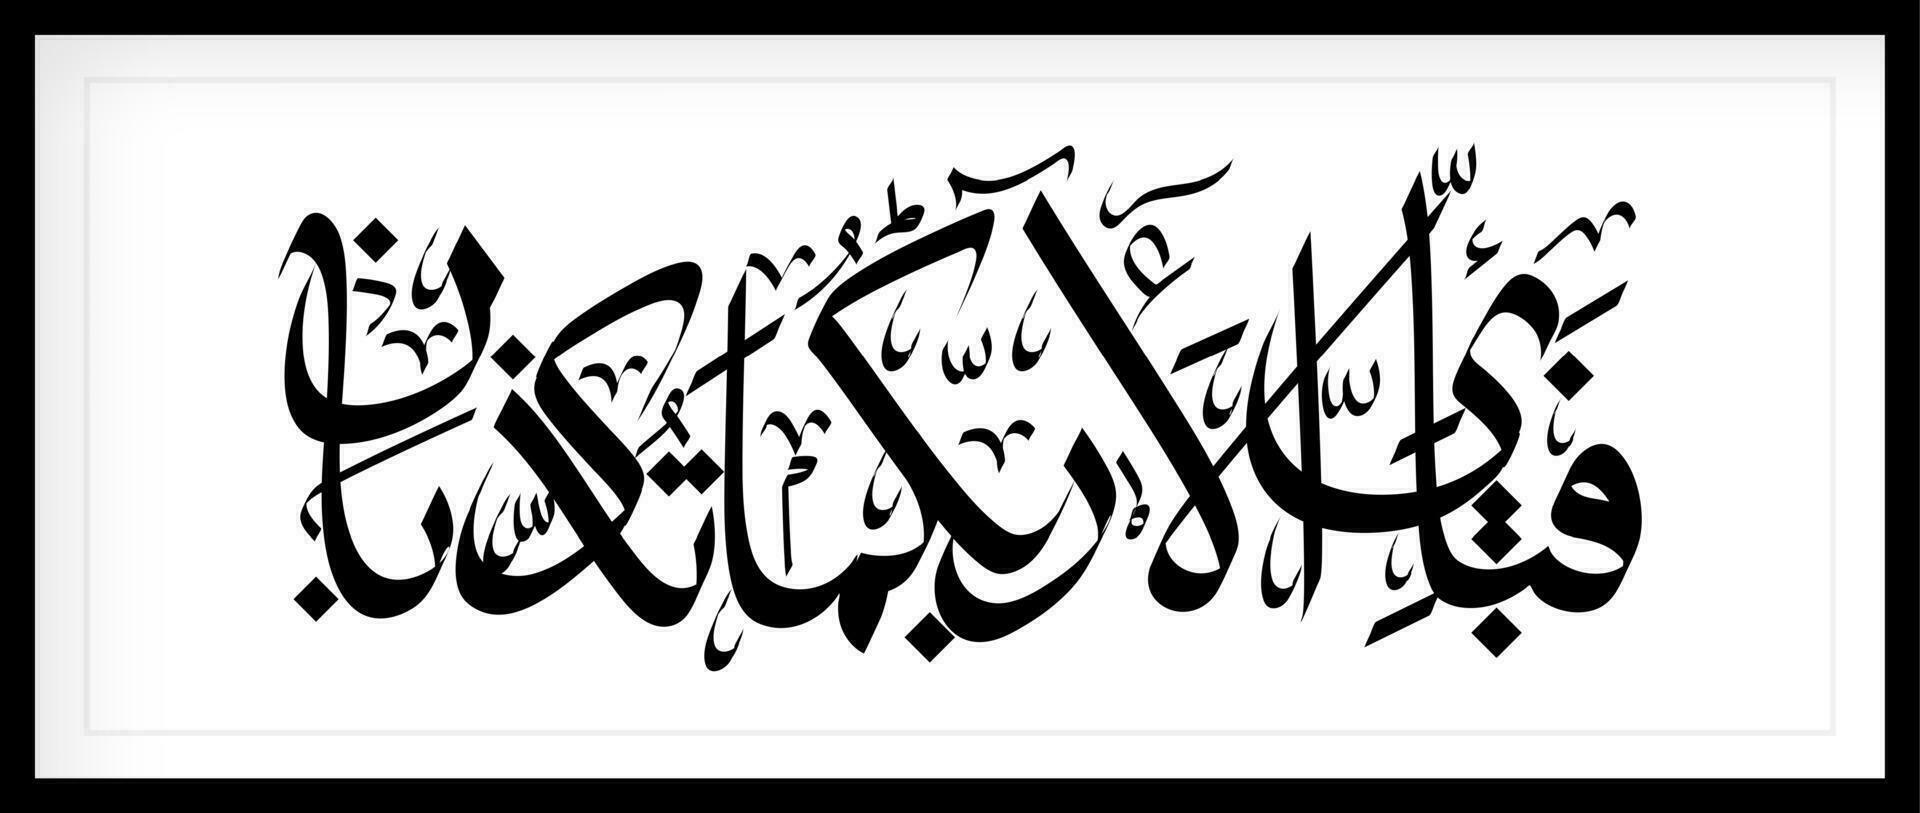 schoonschrift van al-koran al kareem soera ar rahman. een populair vers in soera ar rahman is vertaald welke van uw heer gunsten Doen u ontkennen vector